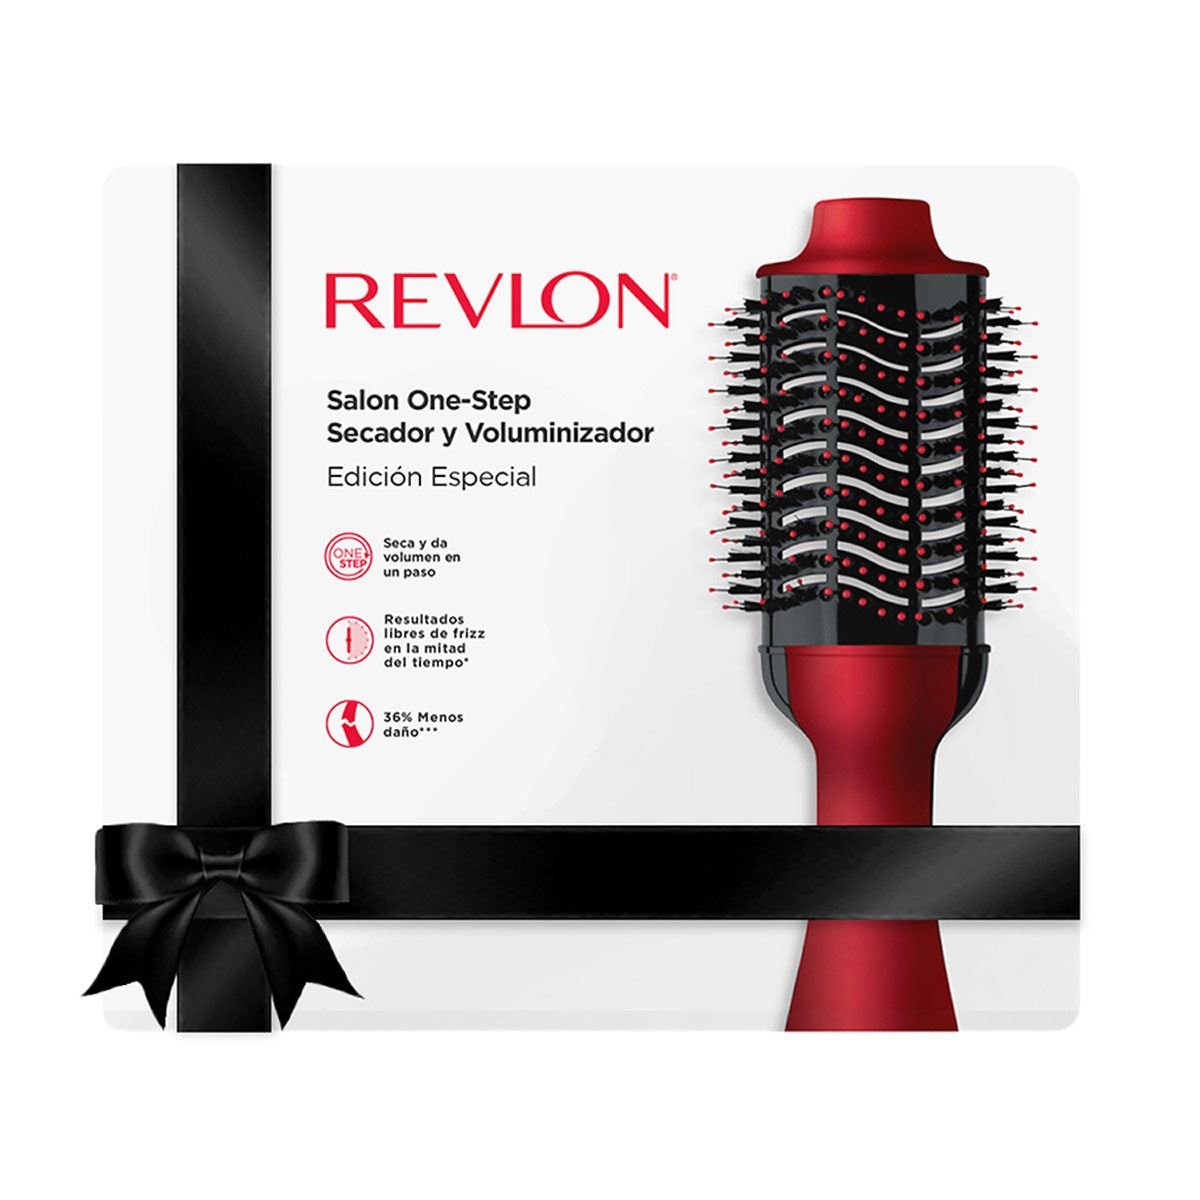 Opinión: He probado el cepillo secador de Revlon y ha sido todo un  descubrimiento 